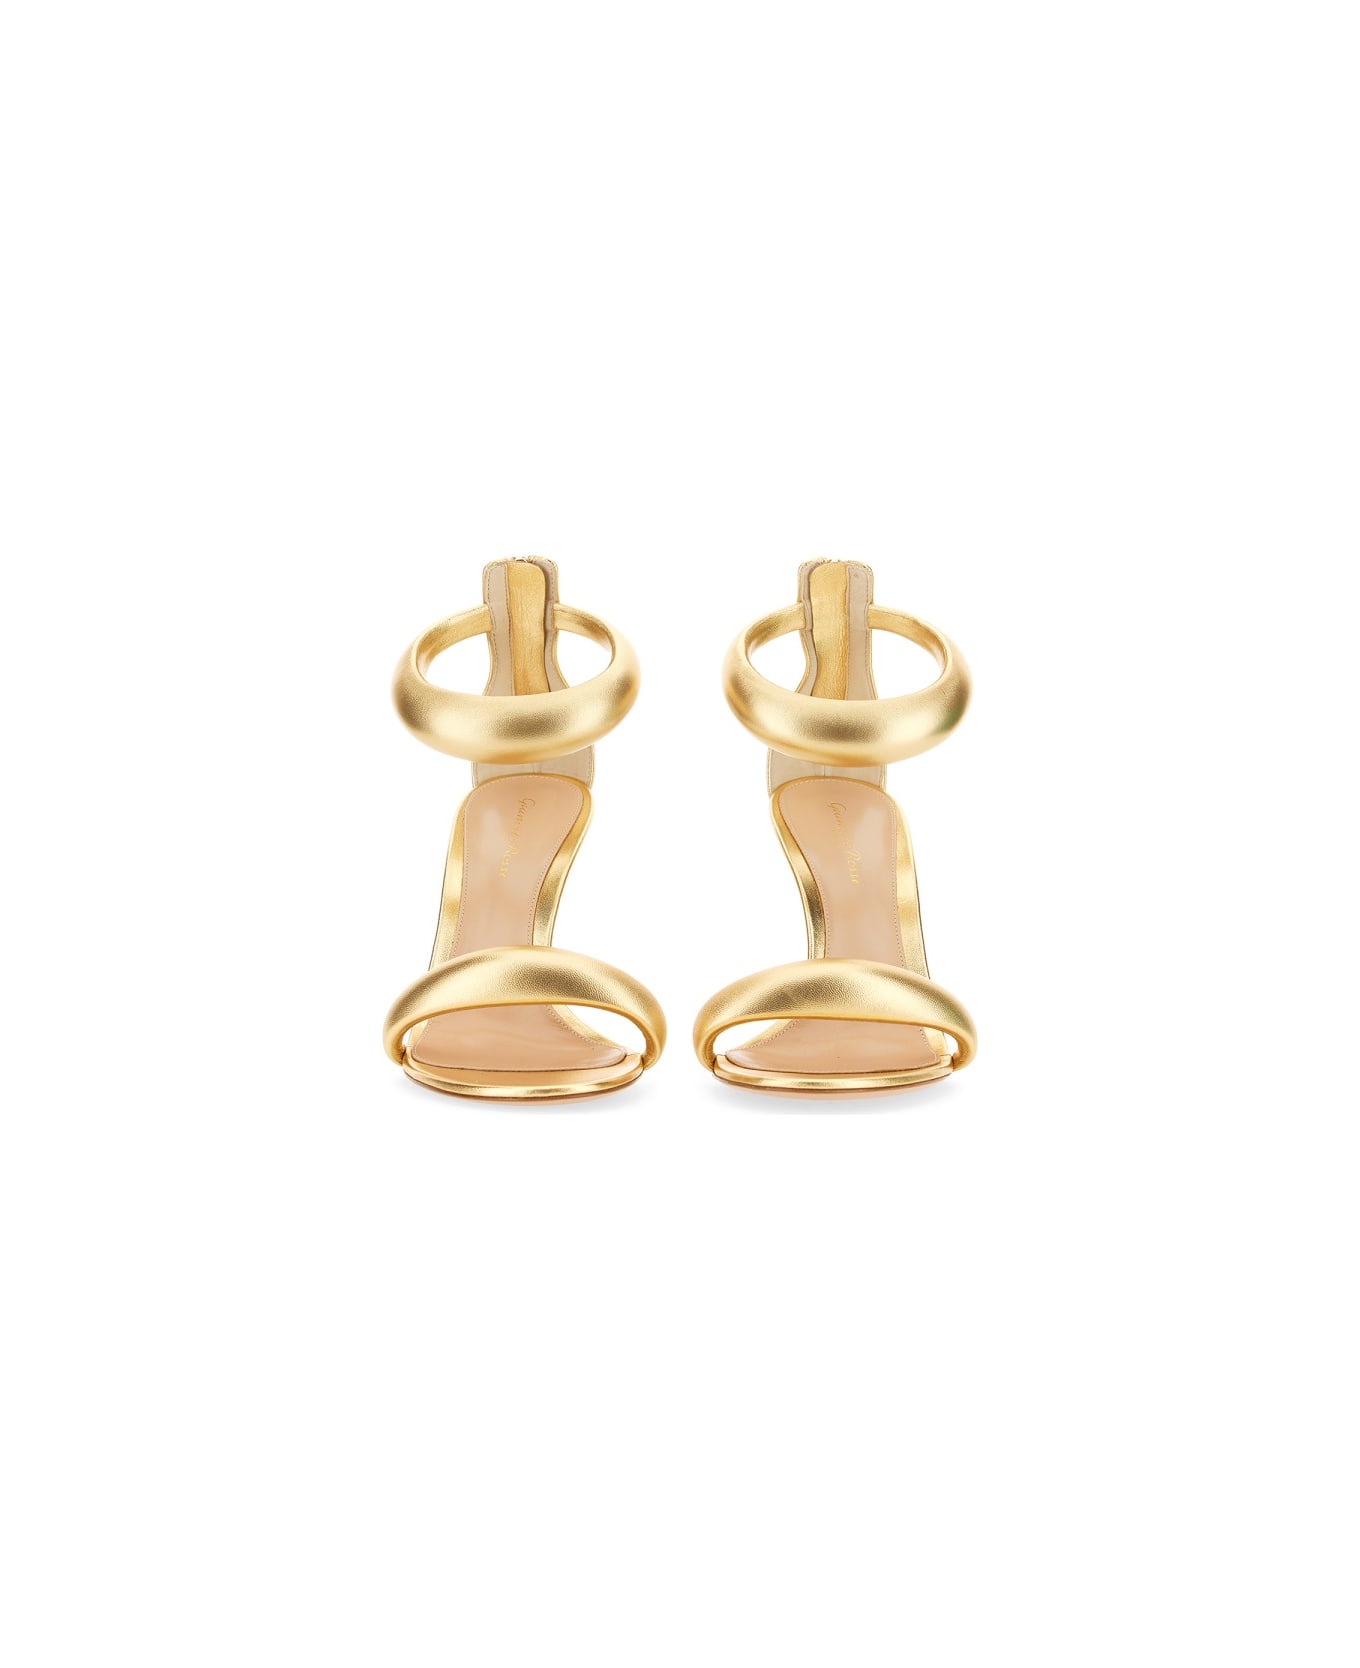 Gianvito Rossi Sandal "bijoux" - GOLD